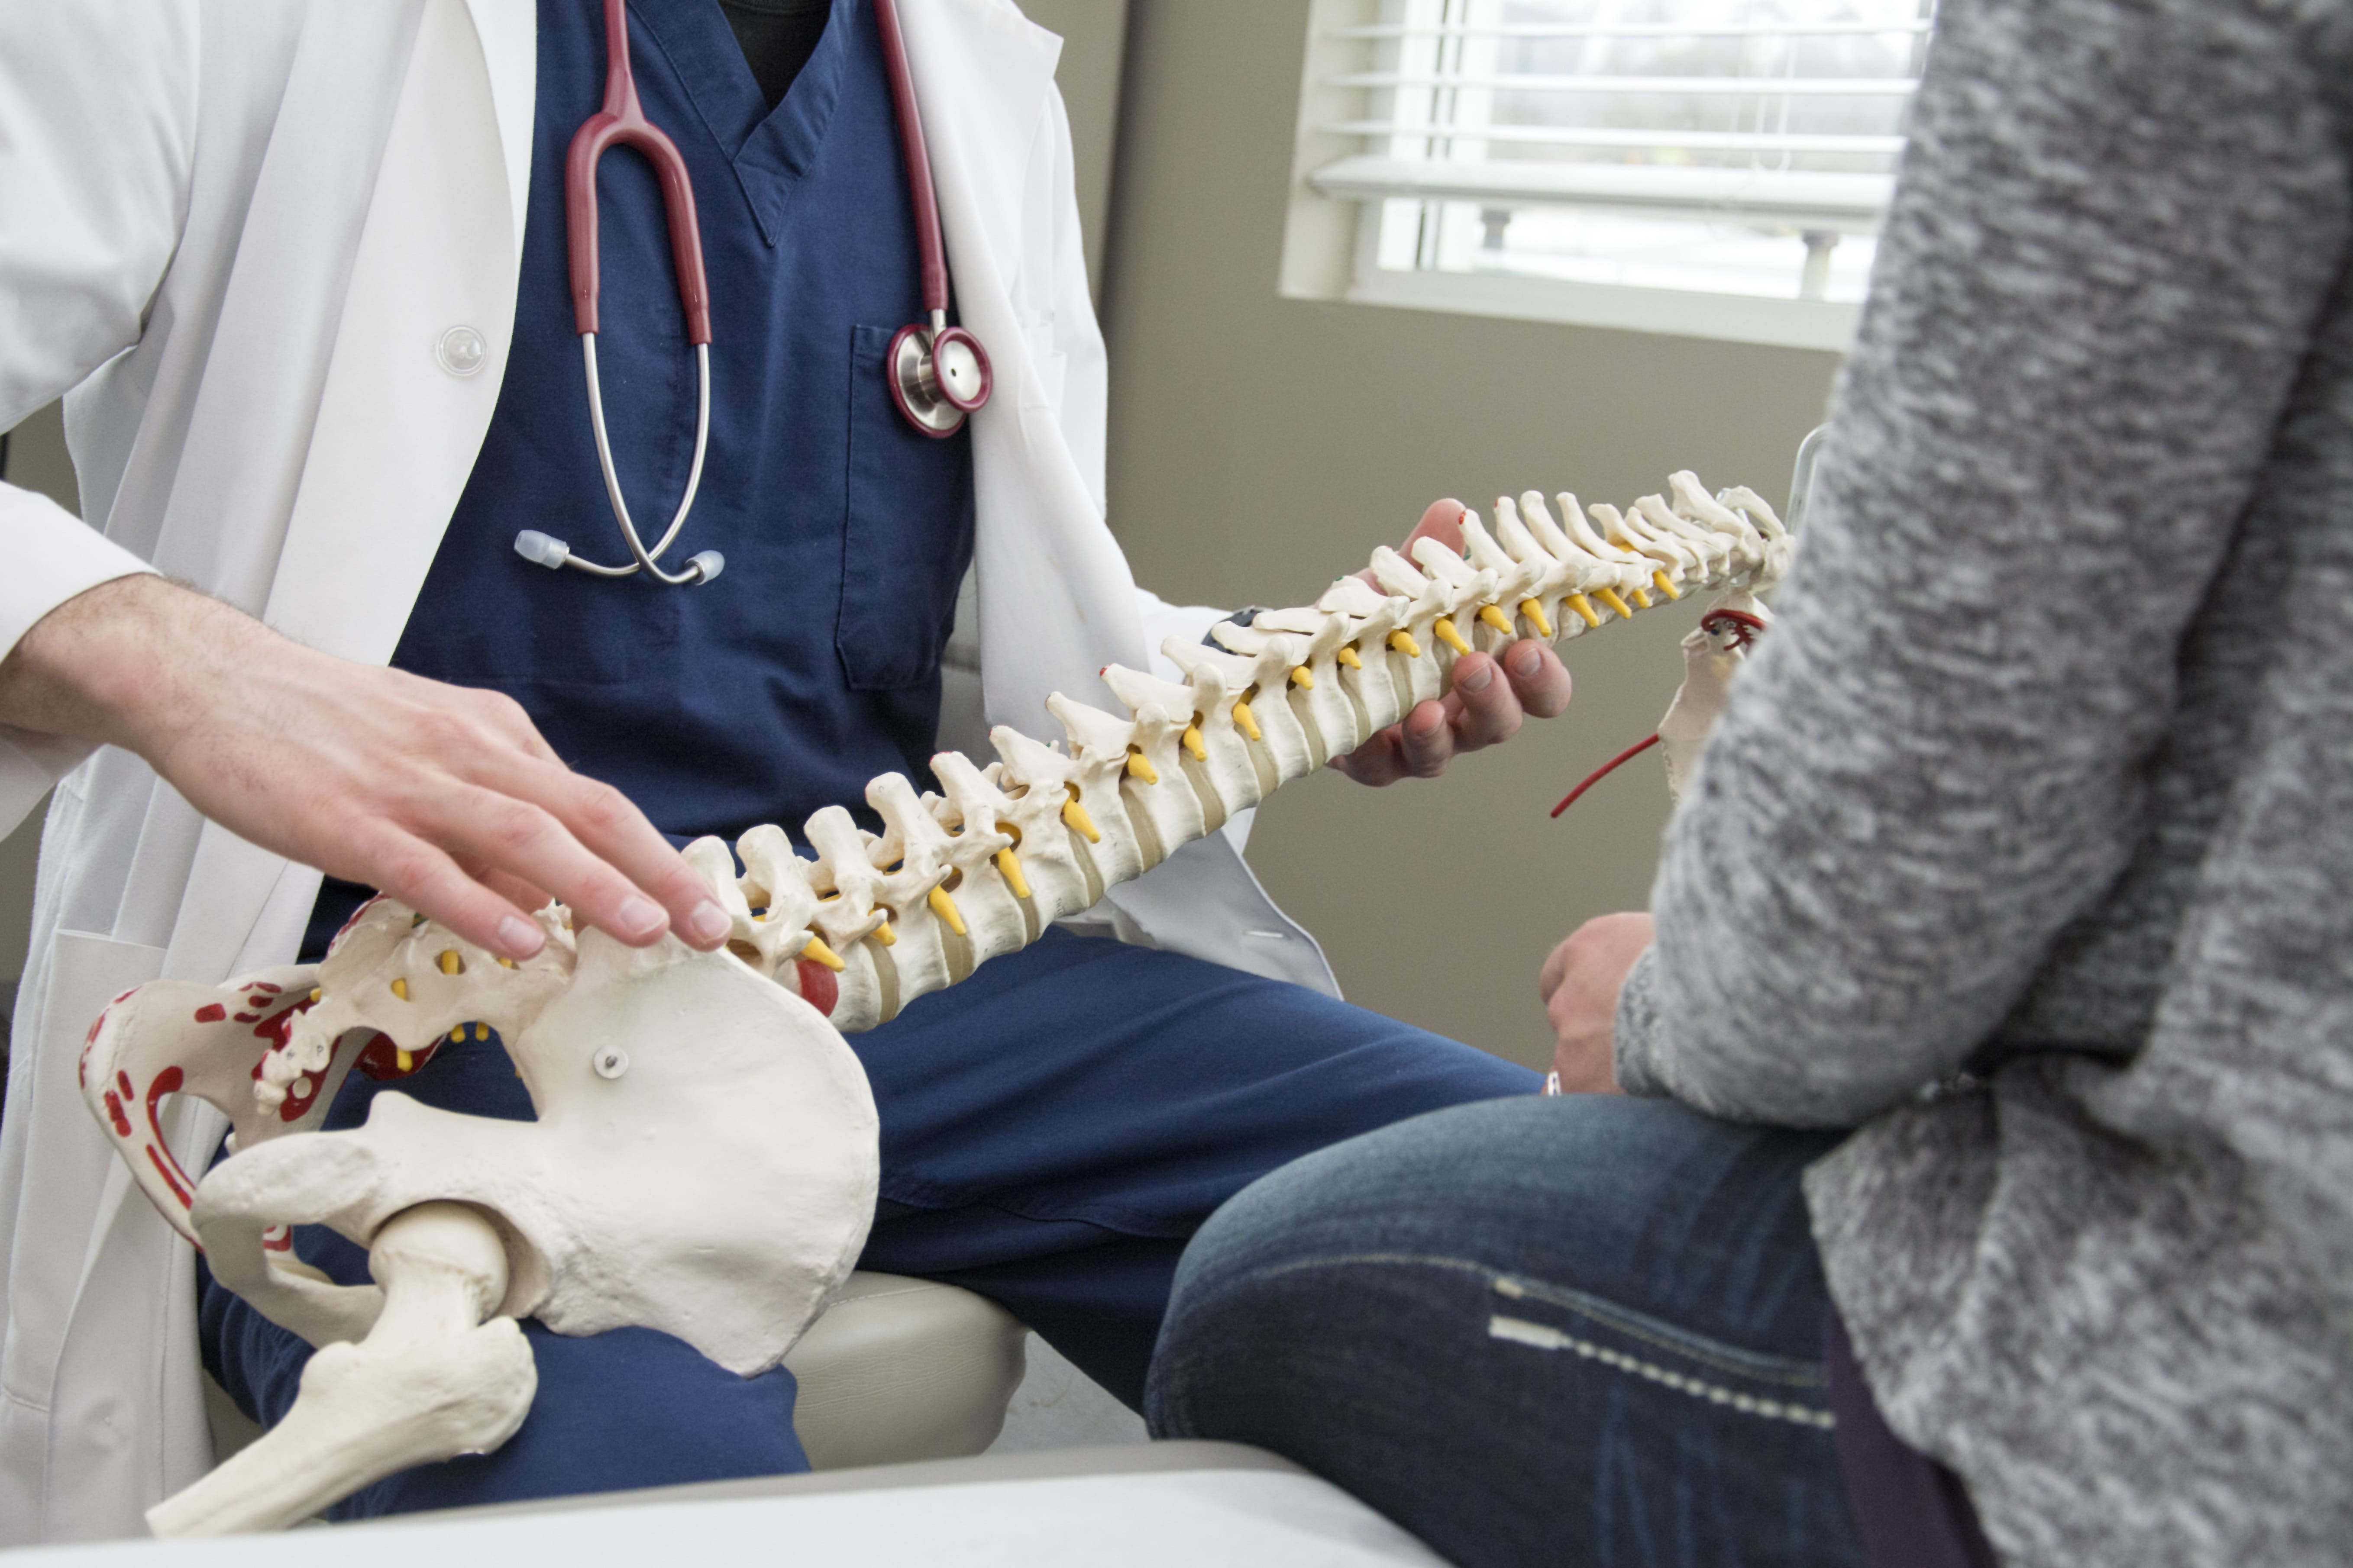 Ostéopathie : existe-t-il des risques pour la santé ?